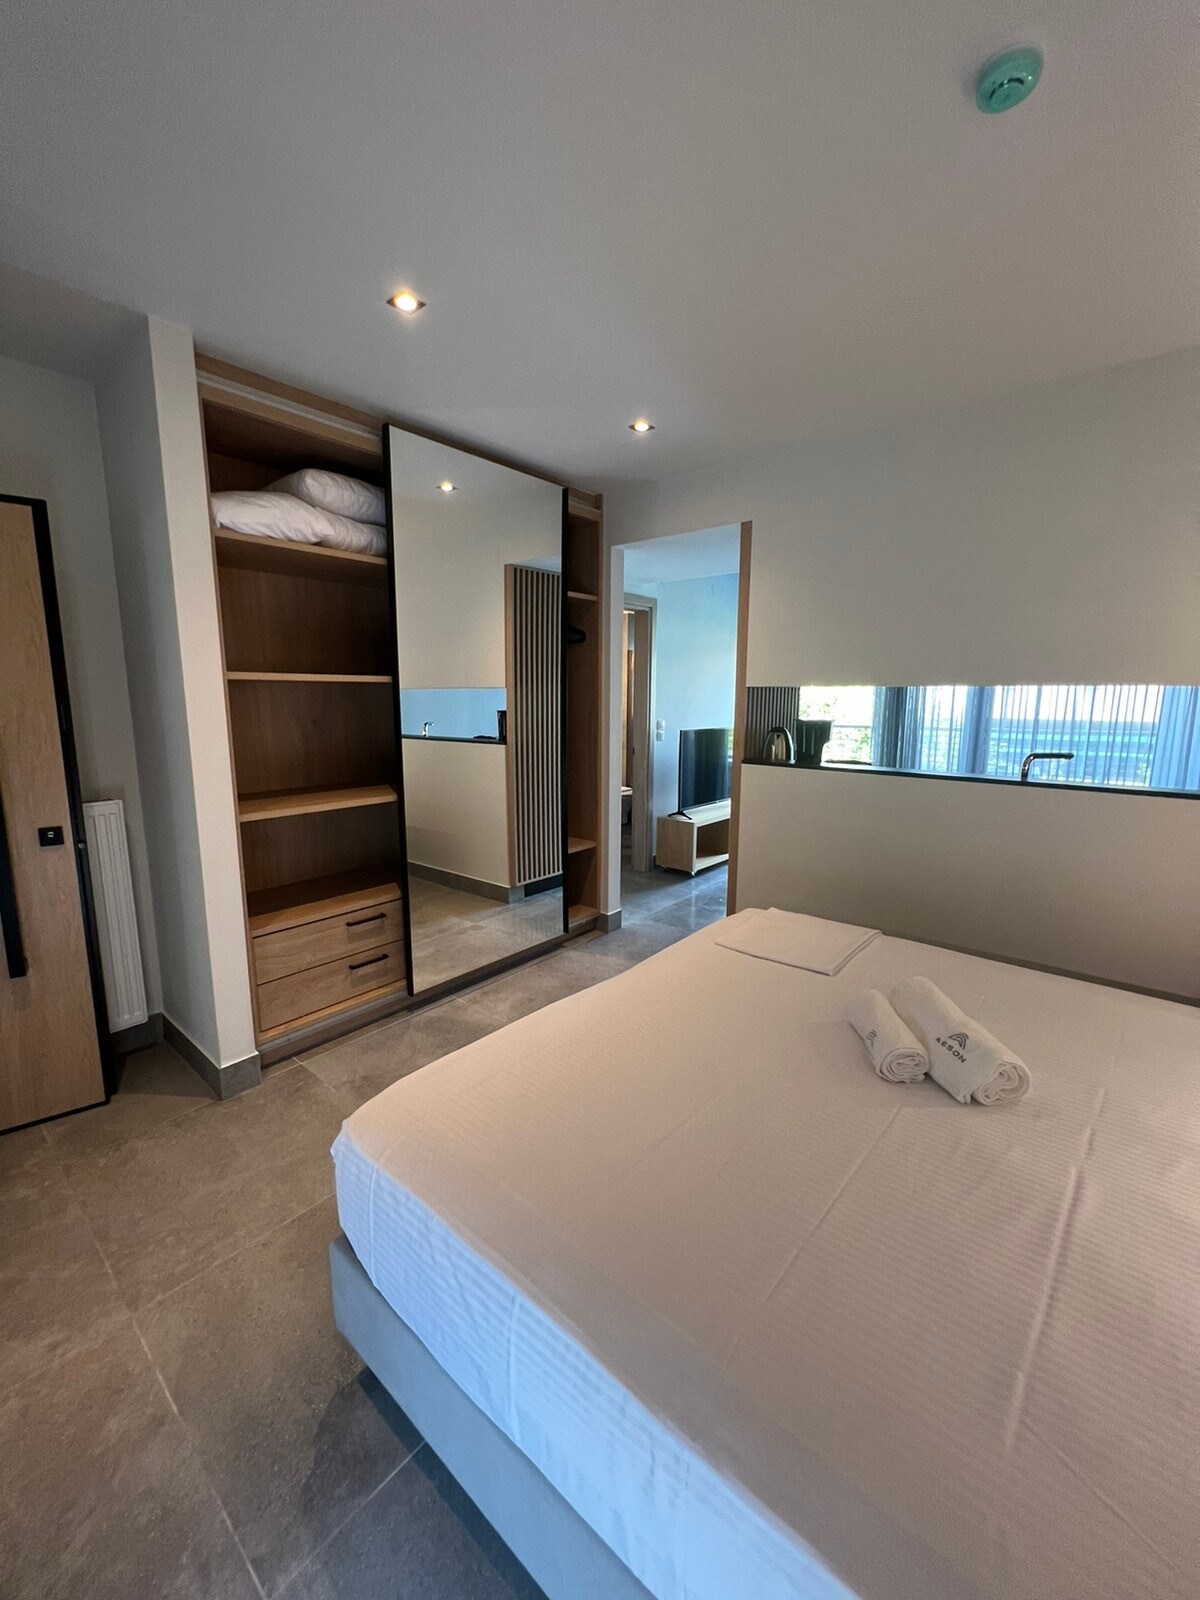 Aeson Premium Living- Roof suite in Volos' Center!